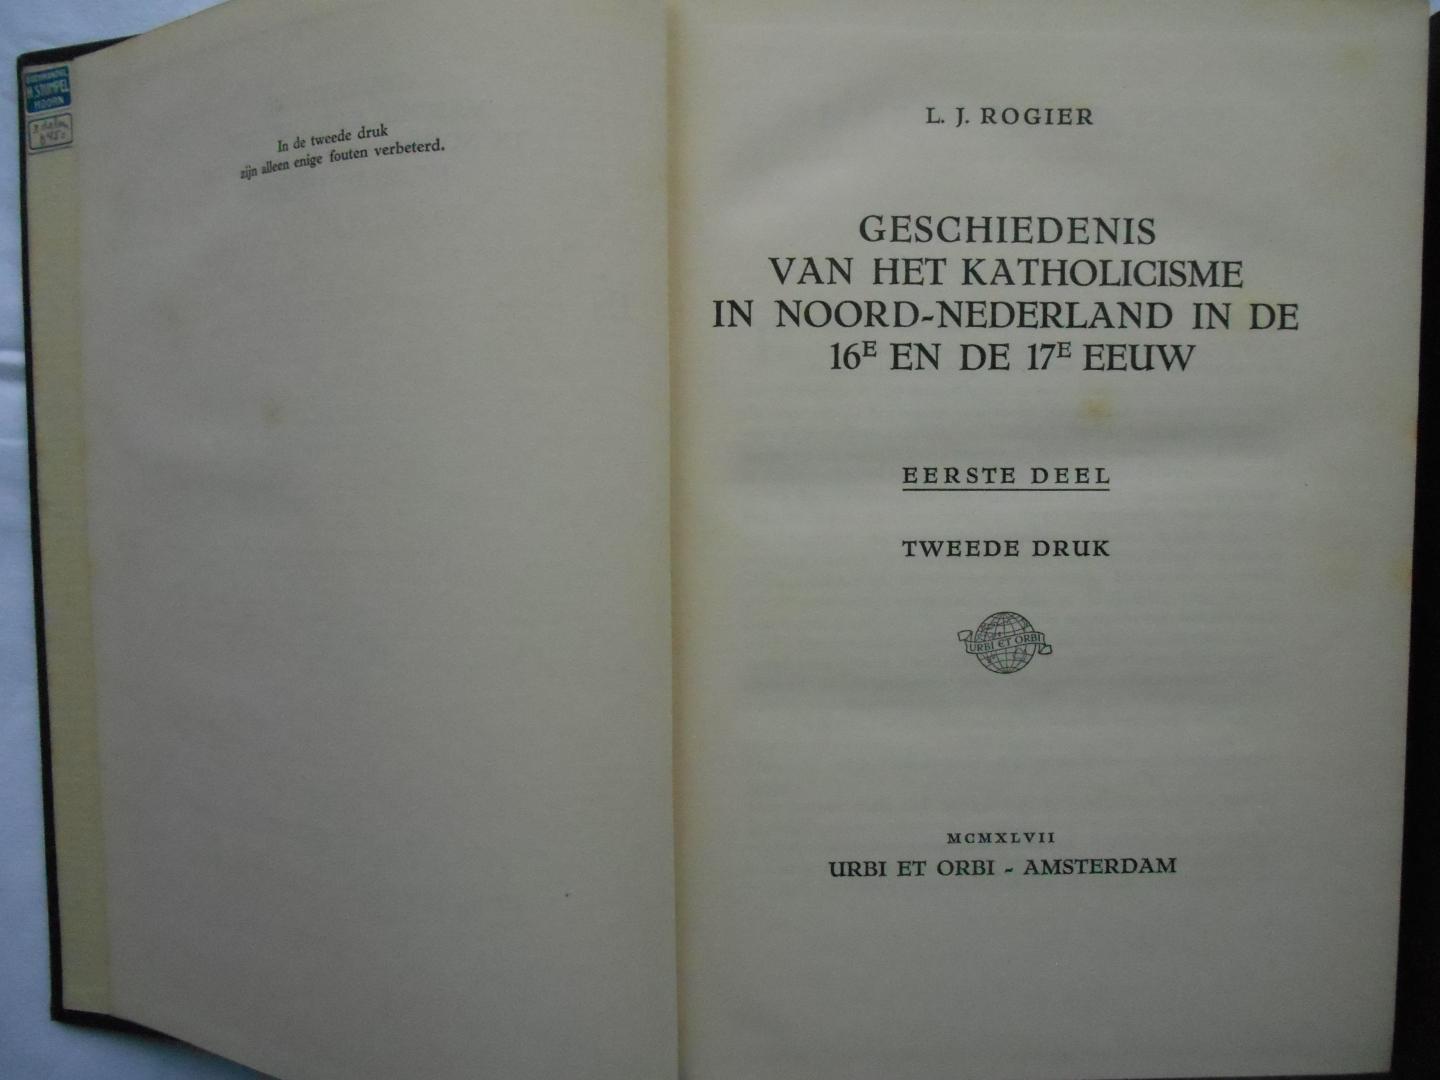 Rogier, L. J. - Geschiedenis van het katholicisme in Noord-Nederland in de 16e en de 17e eeuw - 1 e en 2 e deel